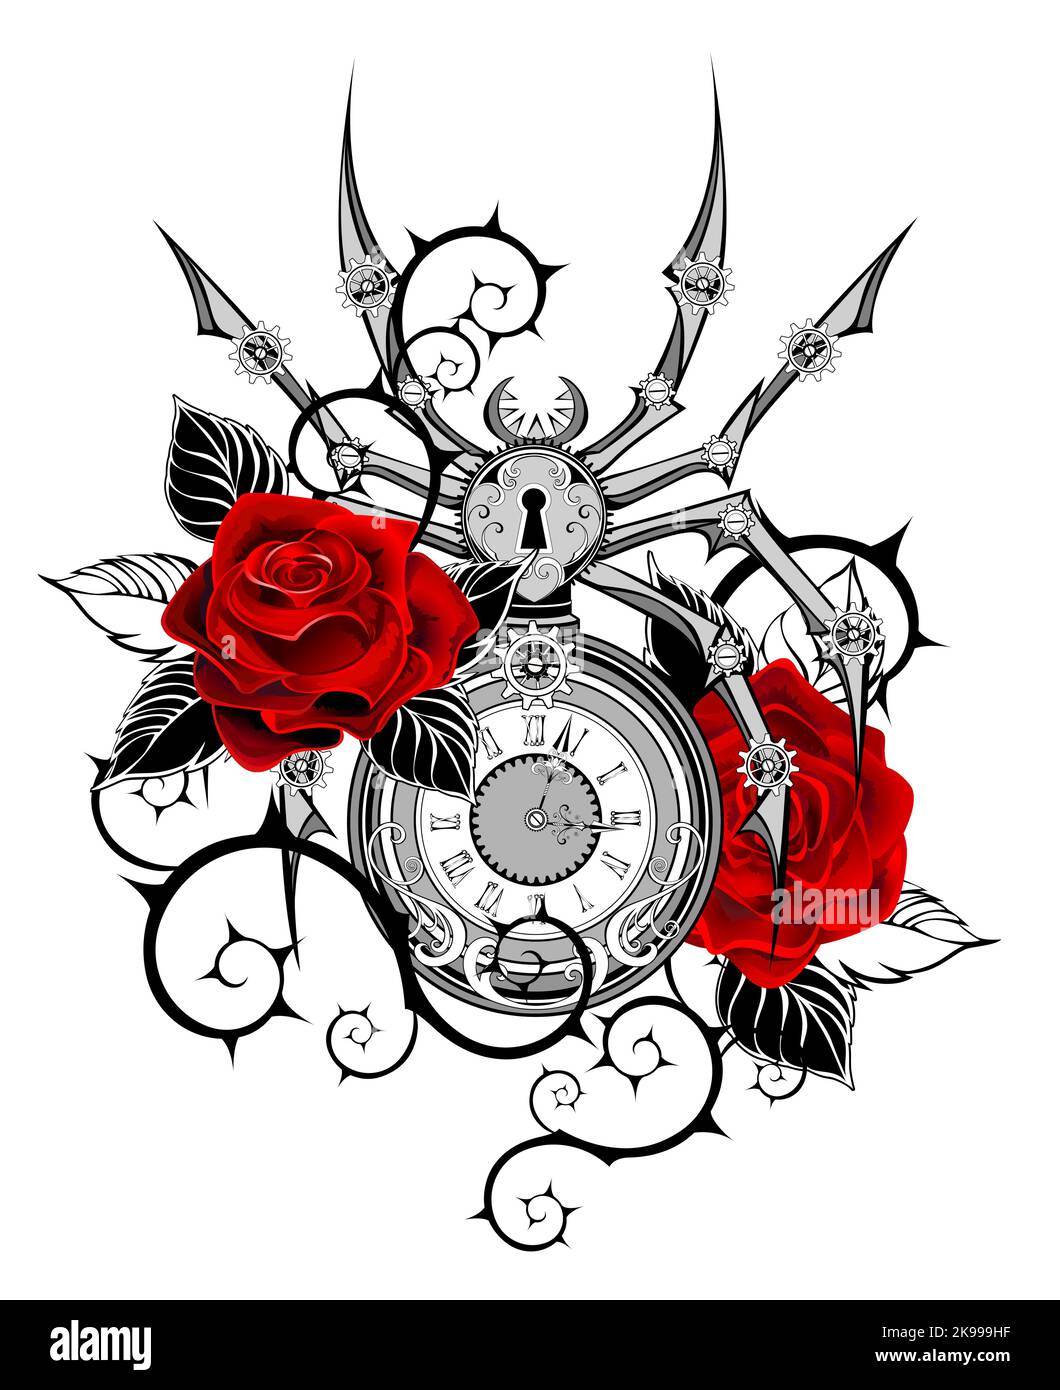 Araignée mécanique antique, profilée, grise avec cadran, décorée de roses rouges peintes de façon artistique avec des feuilles noires et des tiges pointues sur un dos blanc Illustration de Vecteur